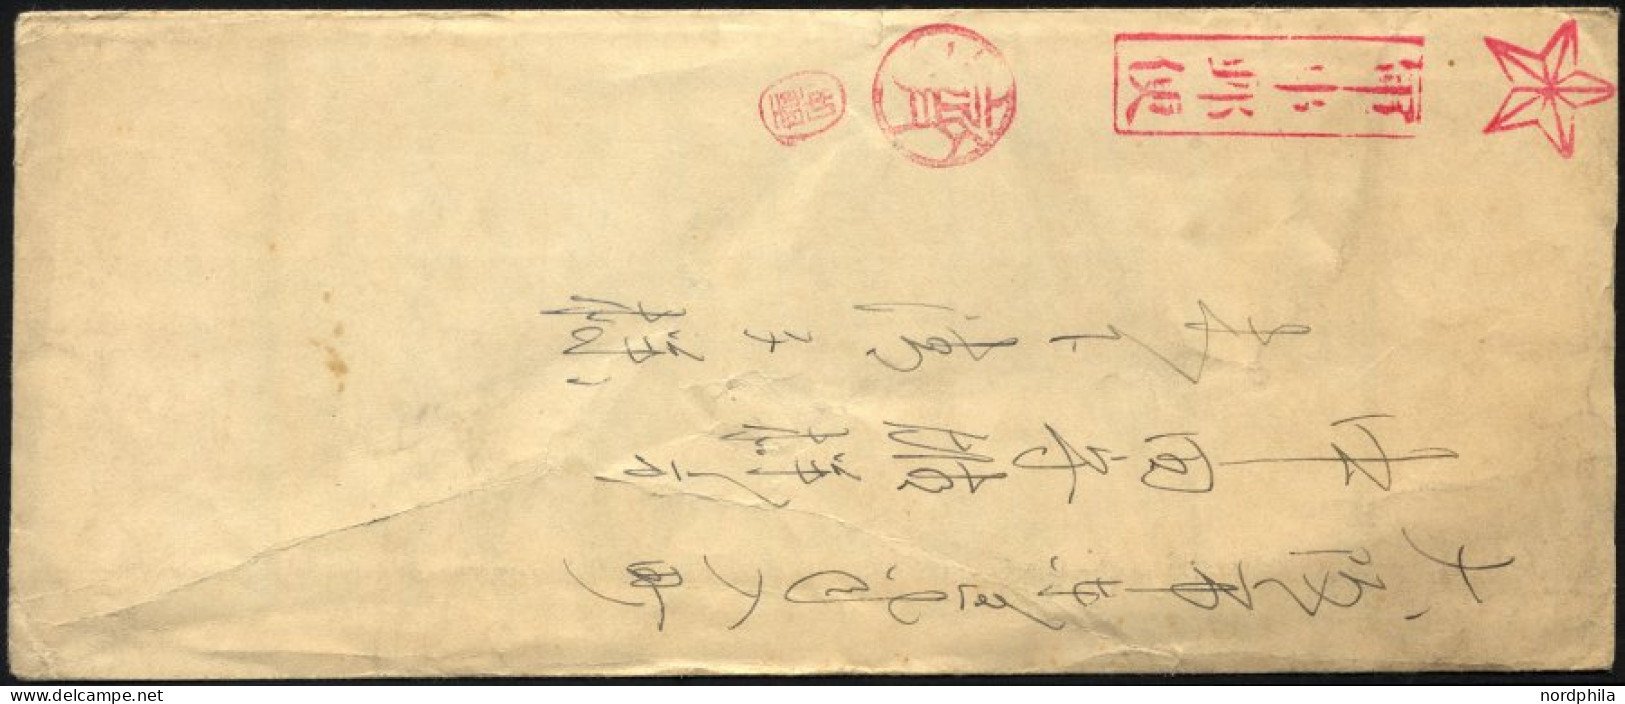 JAPAN 1938, Portofreier Feldpostbrief An Einen In China Kämpfenden Soldaten, Die Portofreiheit Wurde Durch Den Stern Obe - Covers & Documents